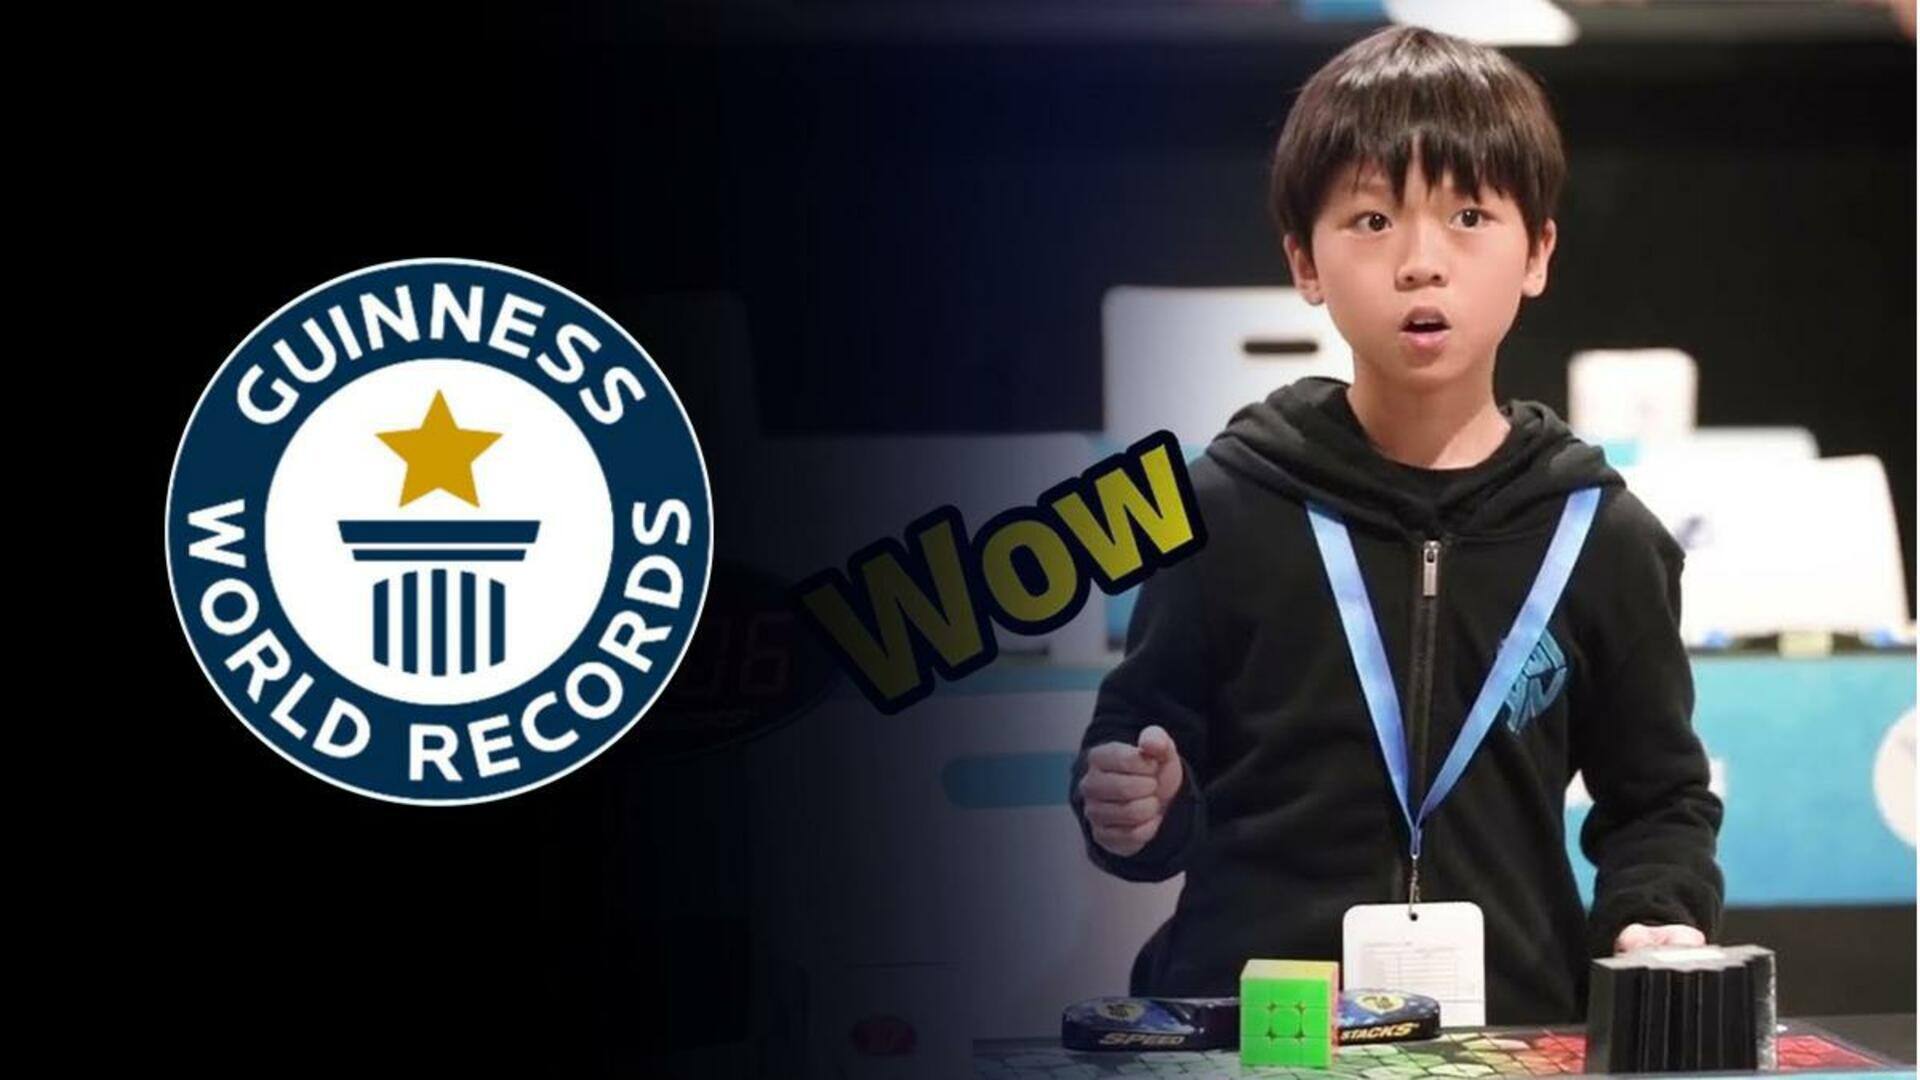 चीन: 9 वर्षीय बच्चे ने सबसे तेज औसत समय में हल किया रुबिक क्यूब, बनाया रिकॉर्ड